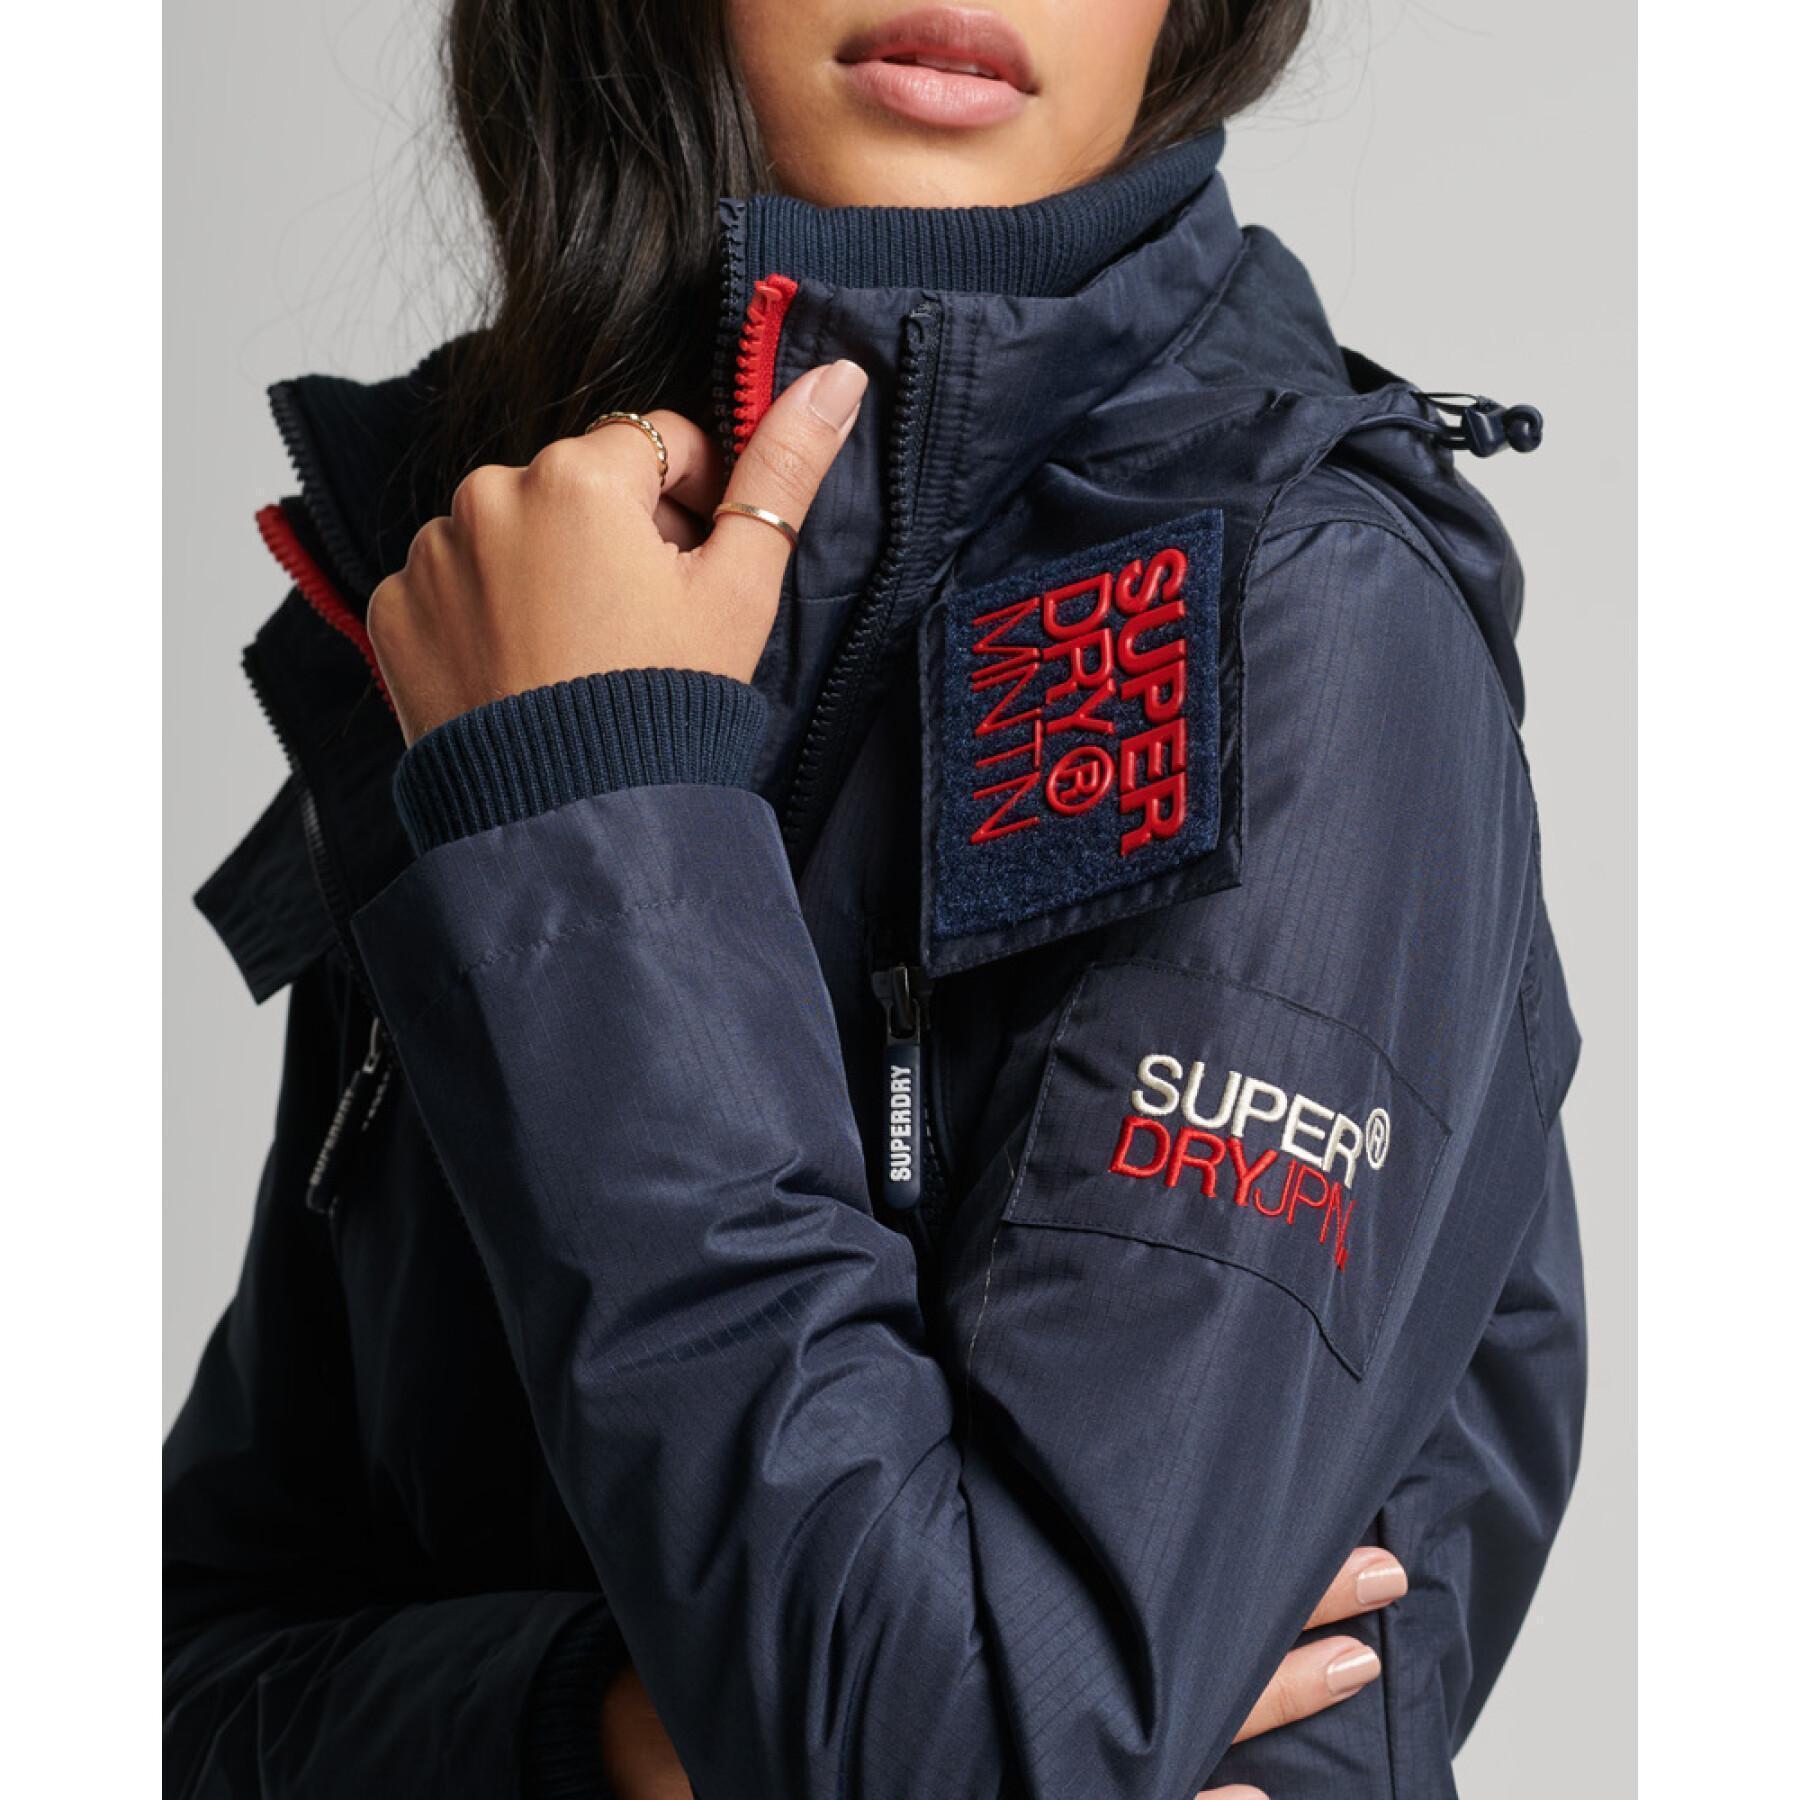 Women's waterproof jacket Superdry Mountain